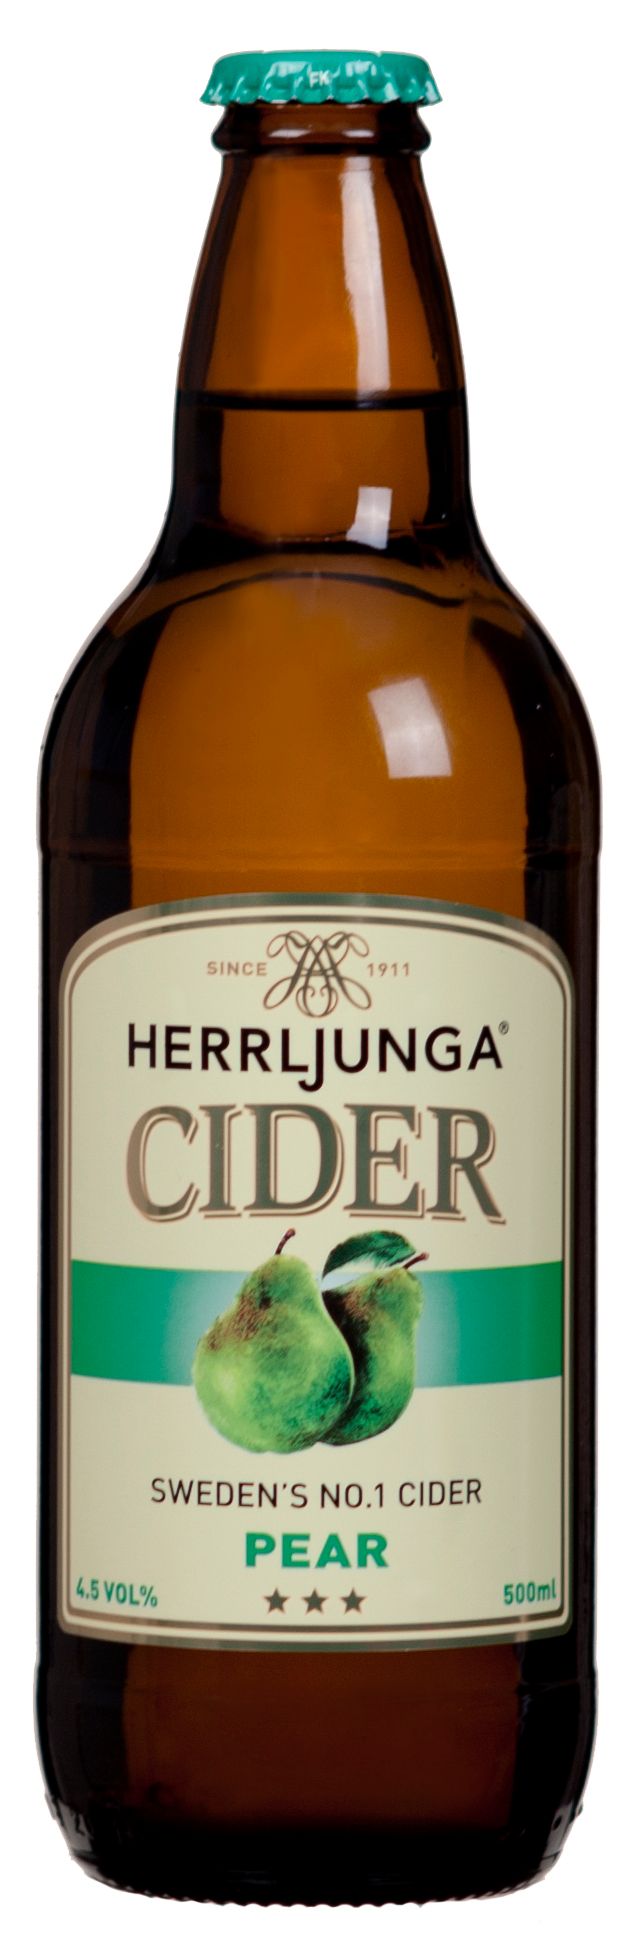 Herrljunga Cider Pear